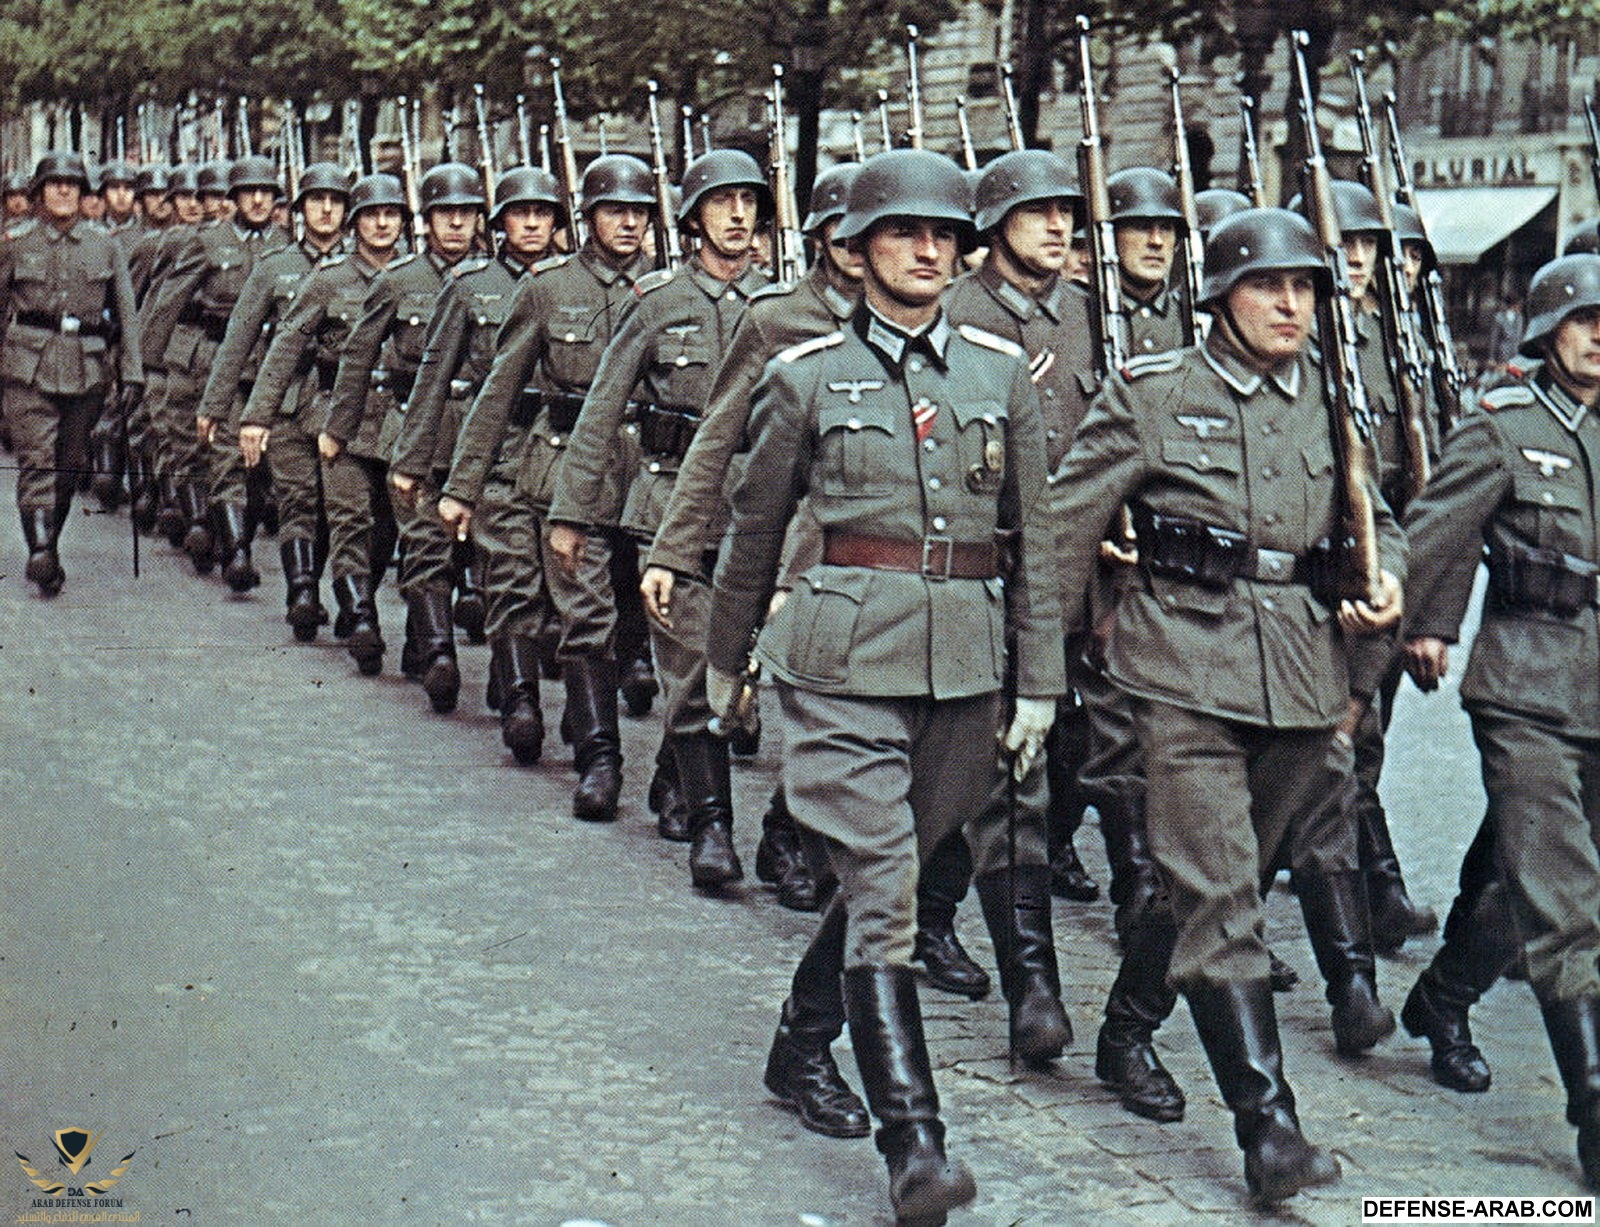 A_column_of_German_forces_in_Paris.jpg